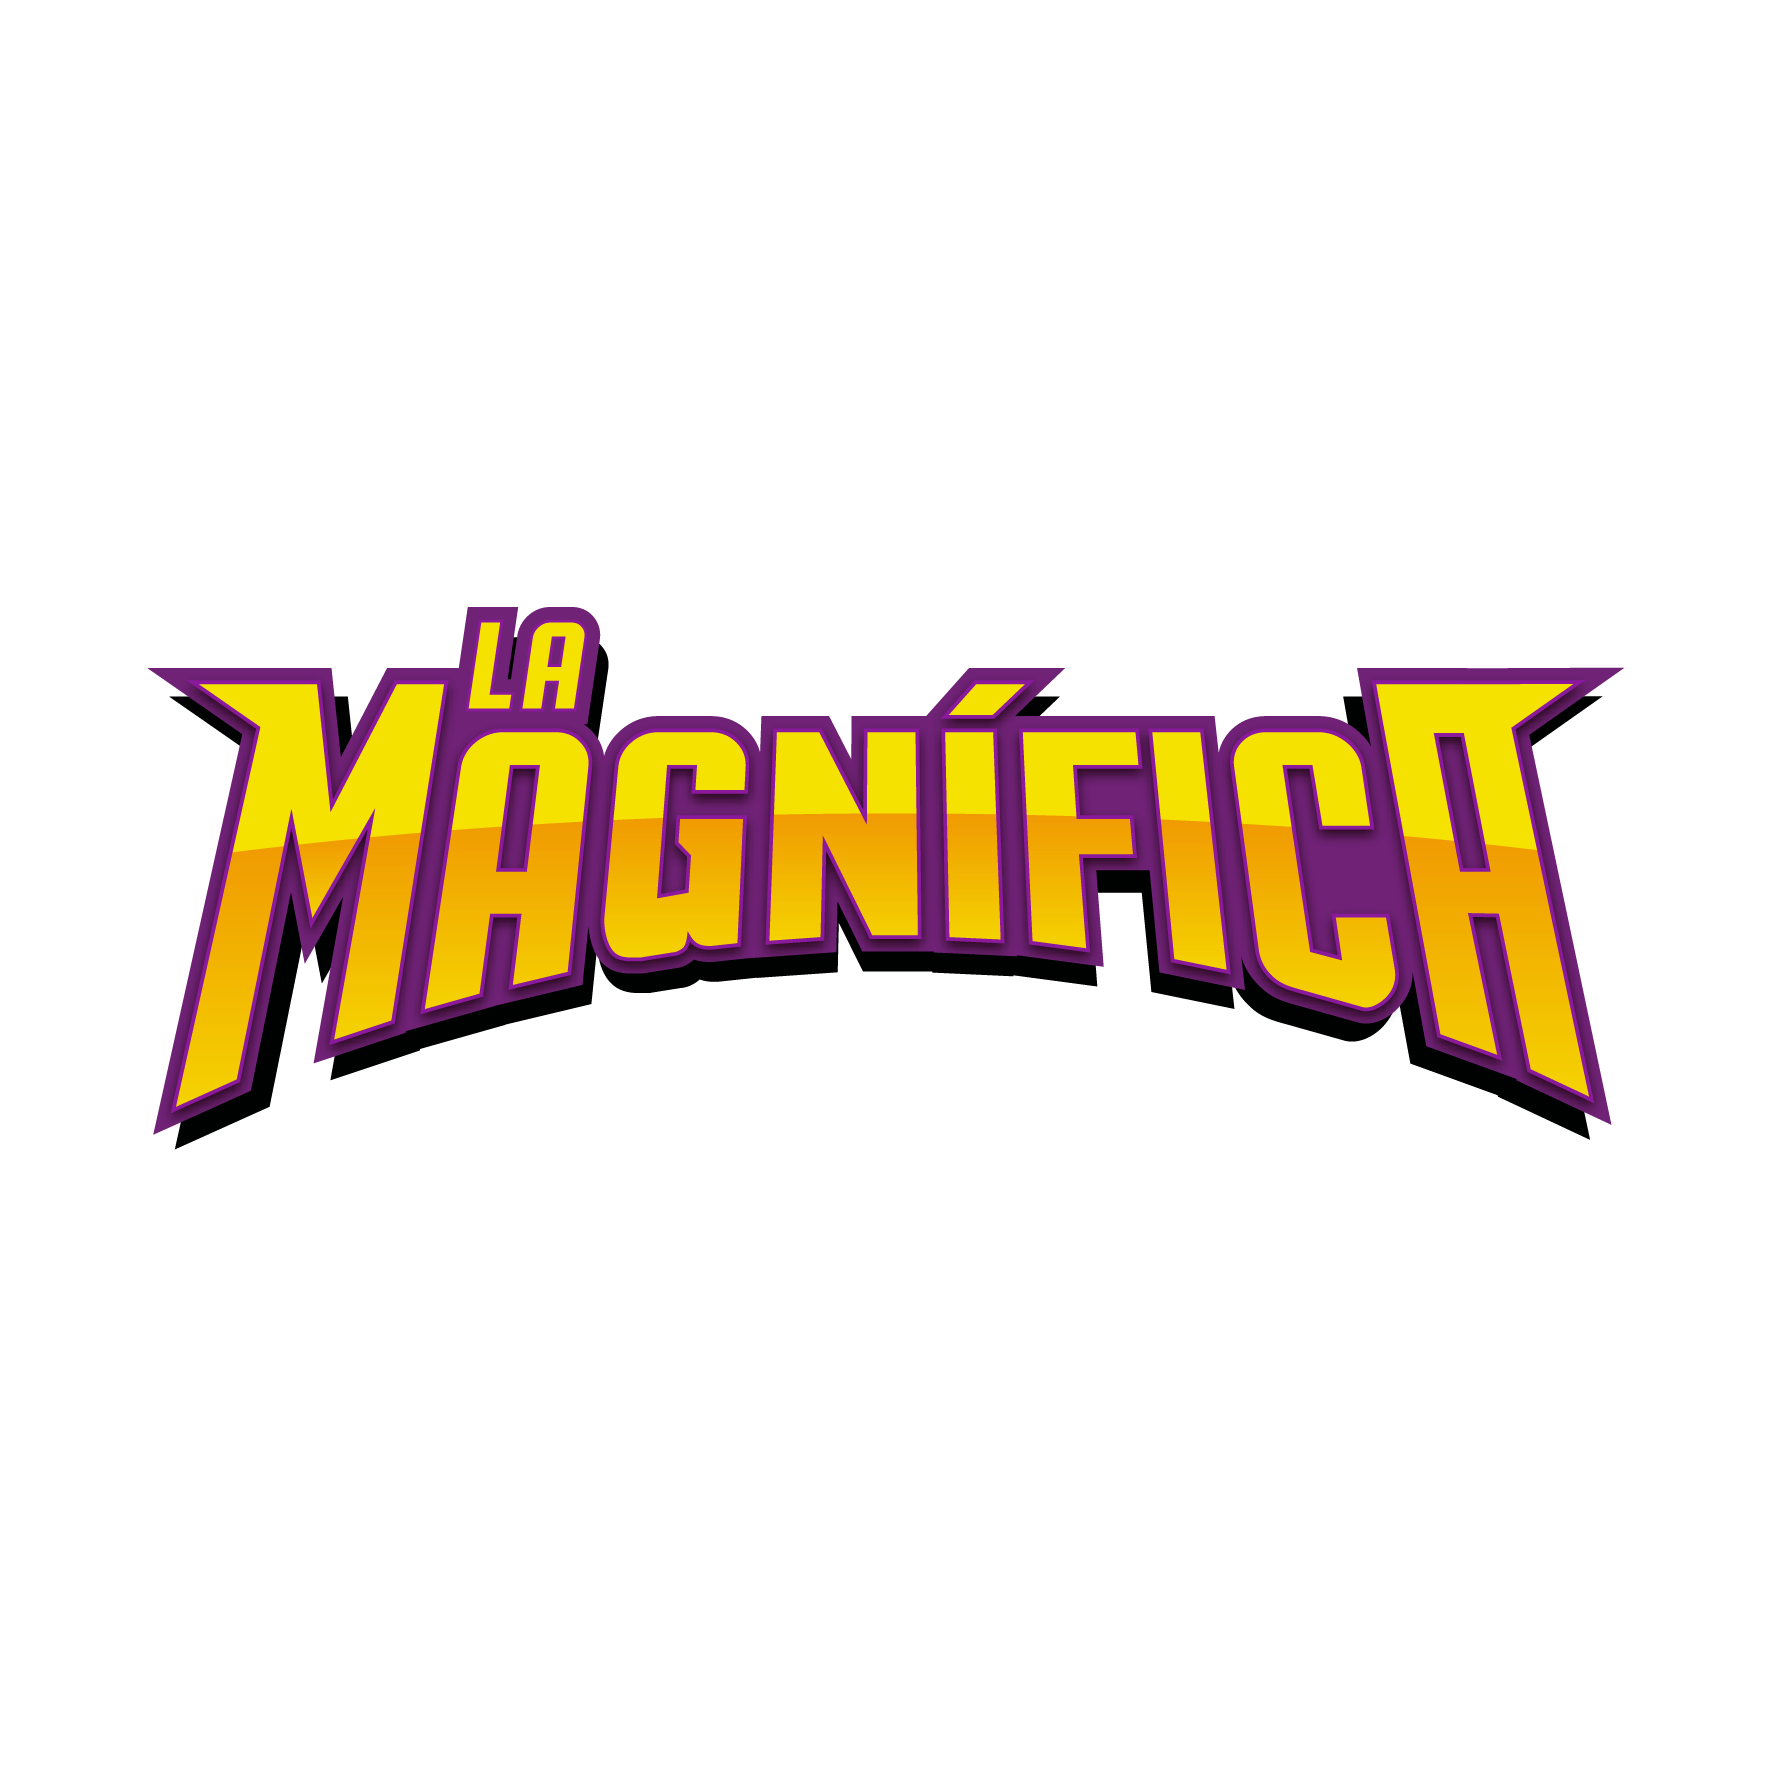 Listen to La Magnifica FM - Ciudad de Puebla 95.5 FM